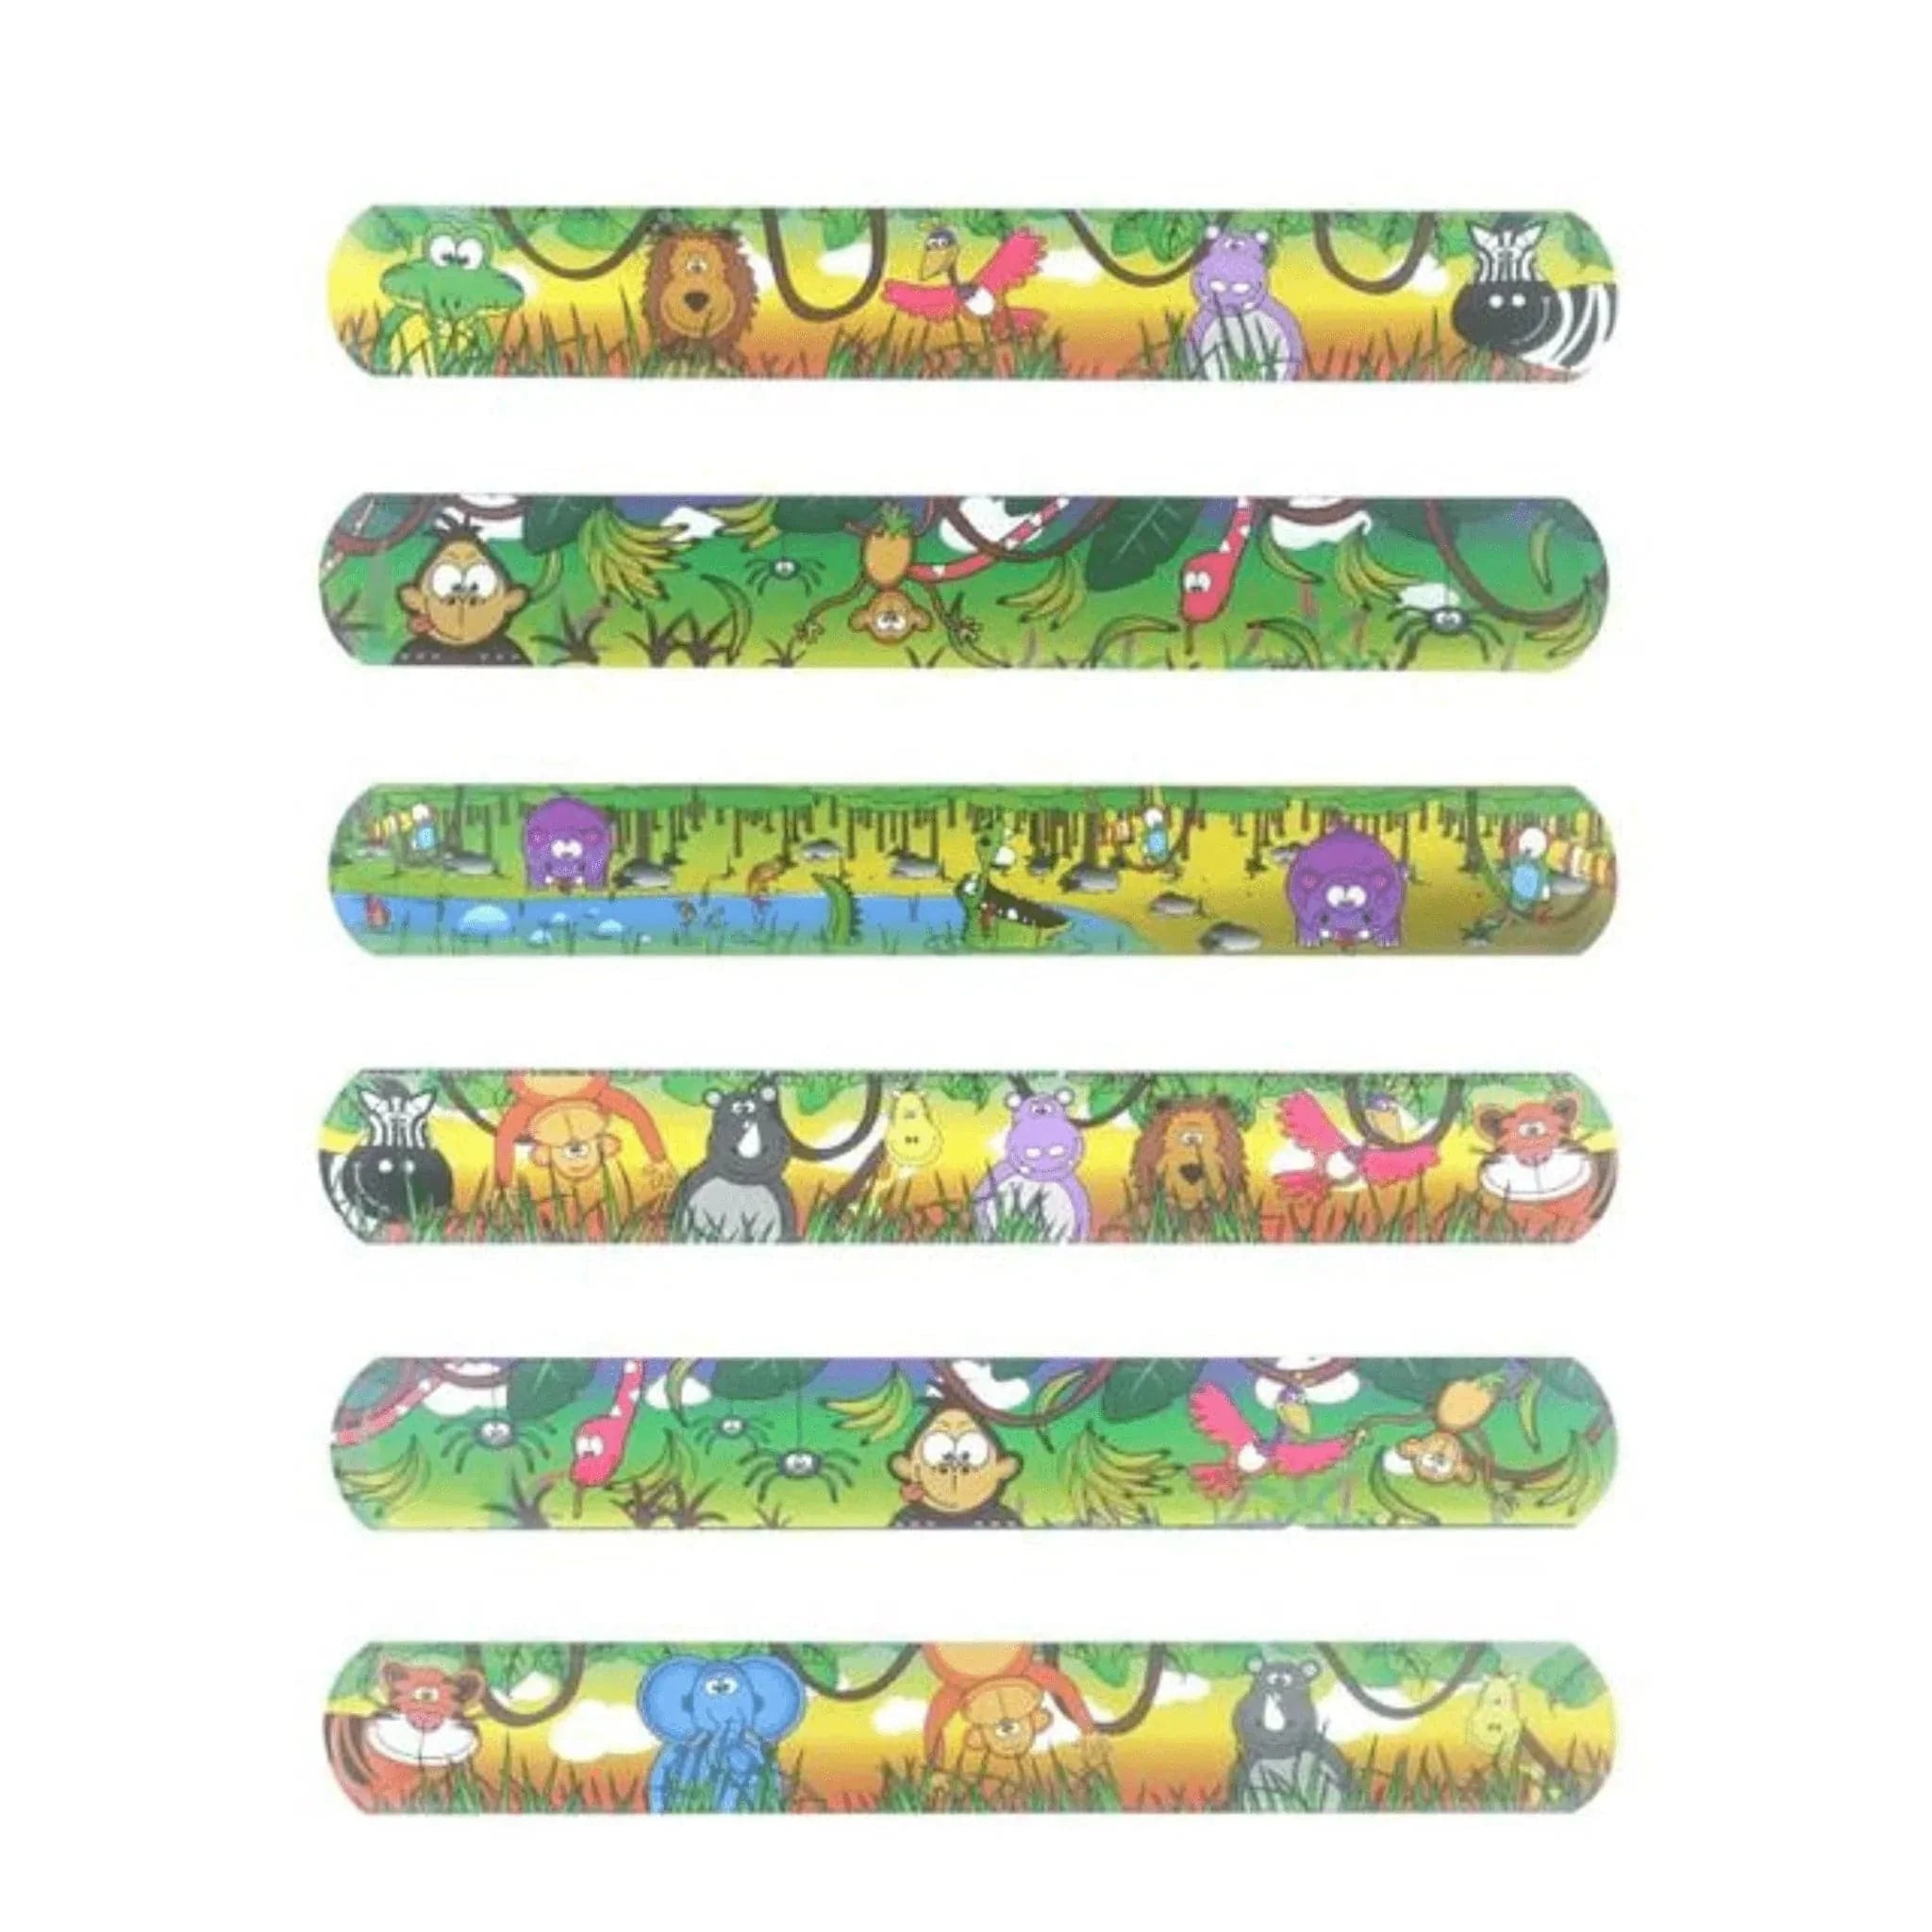 Jungle Snap Bracelets - Kids Party Craft